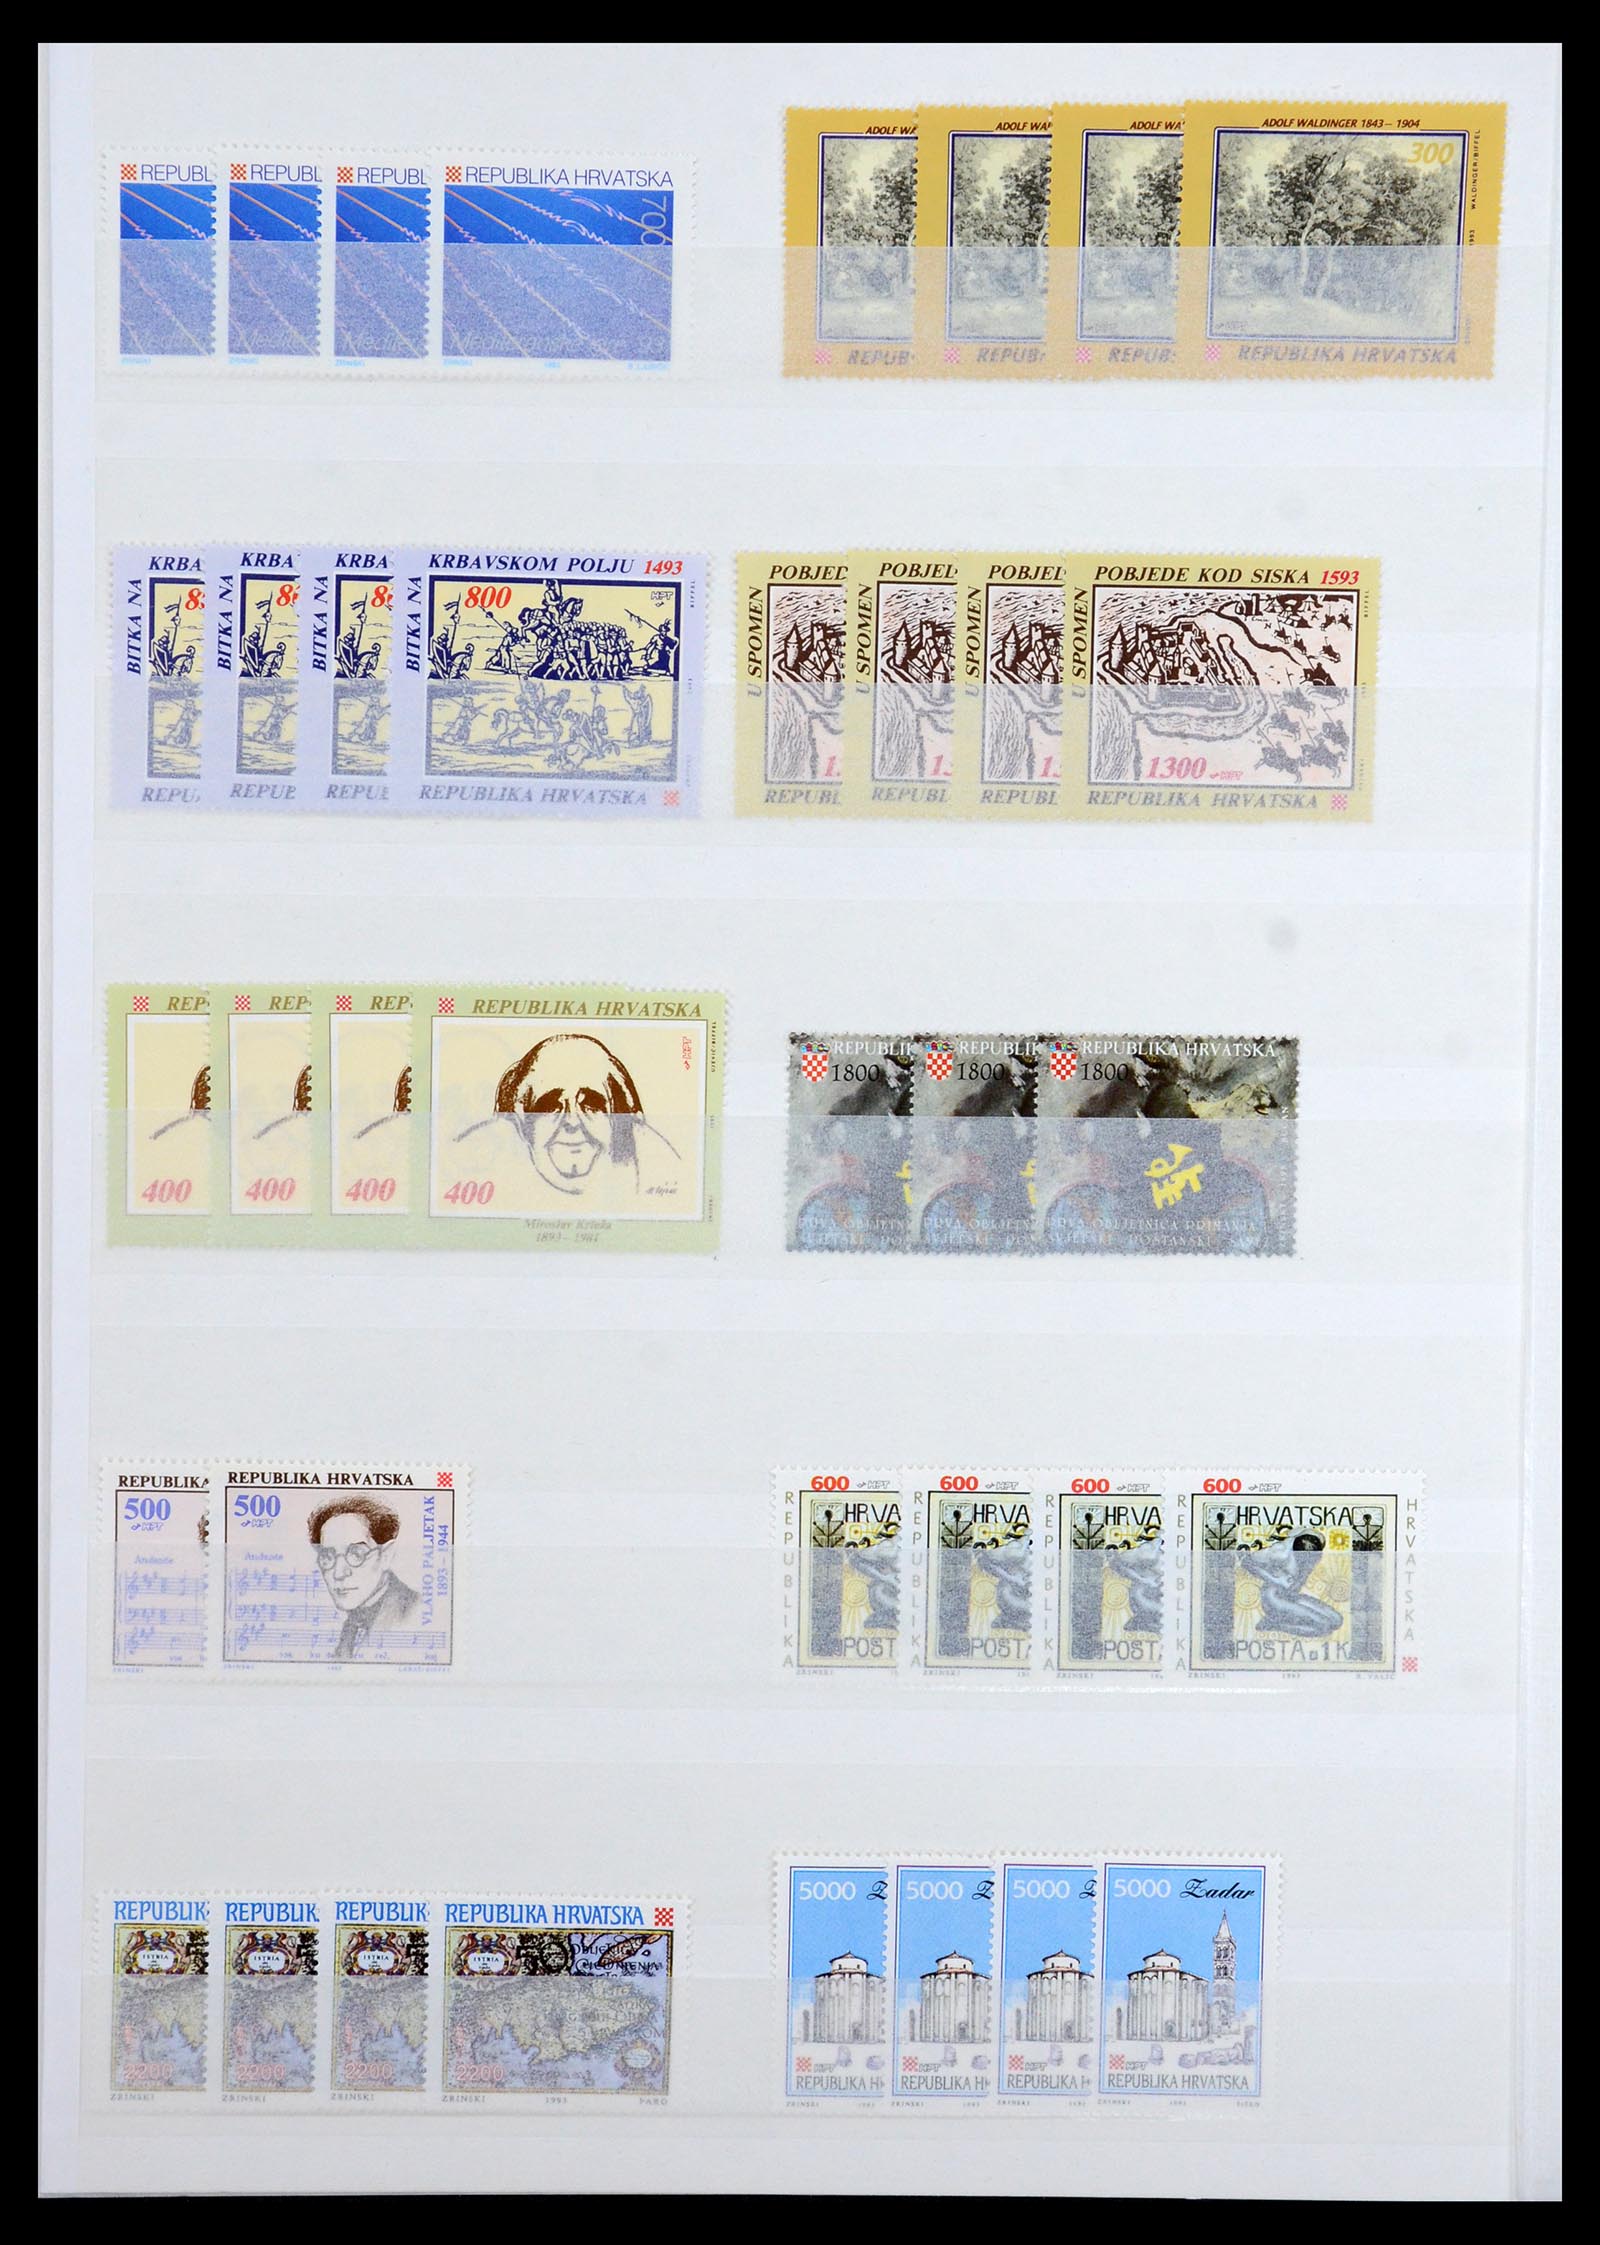 36461 036 - Stamp collection 36461 Slovenia, Croatia and Bosnia-Herzegovina MNH 1991